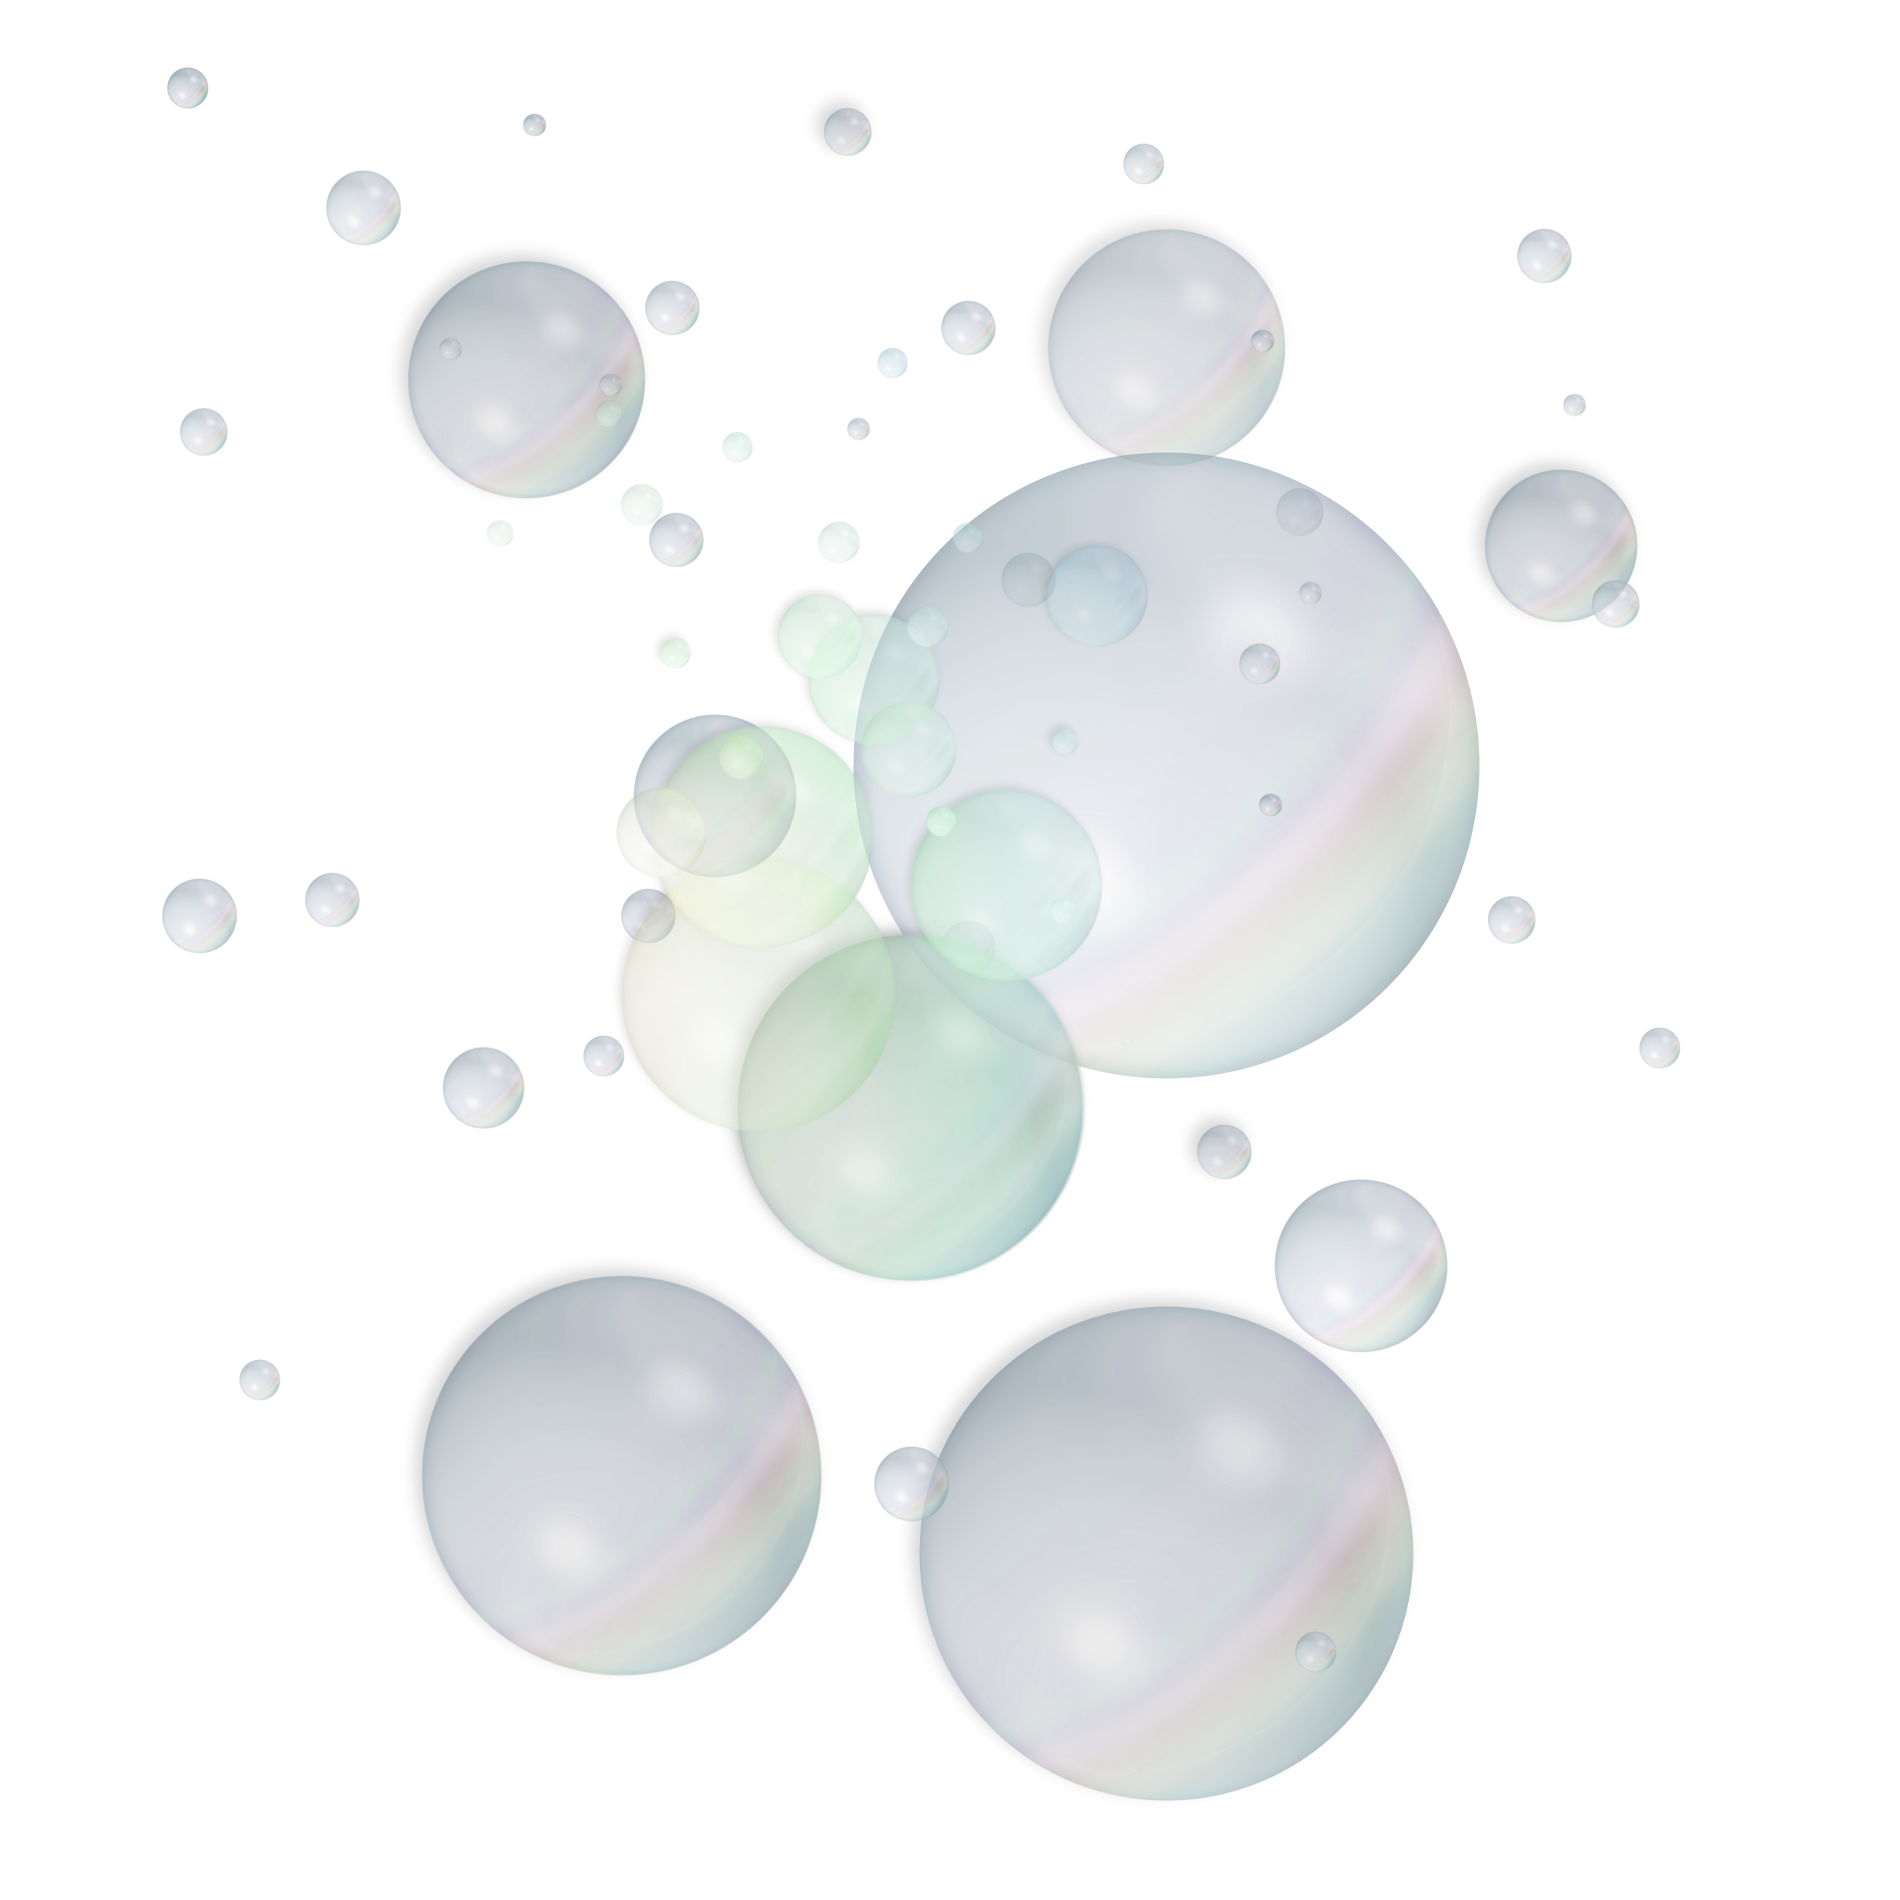 Bubbles Hd PNG Image